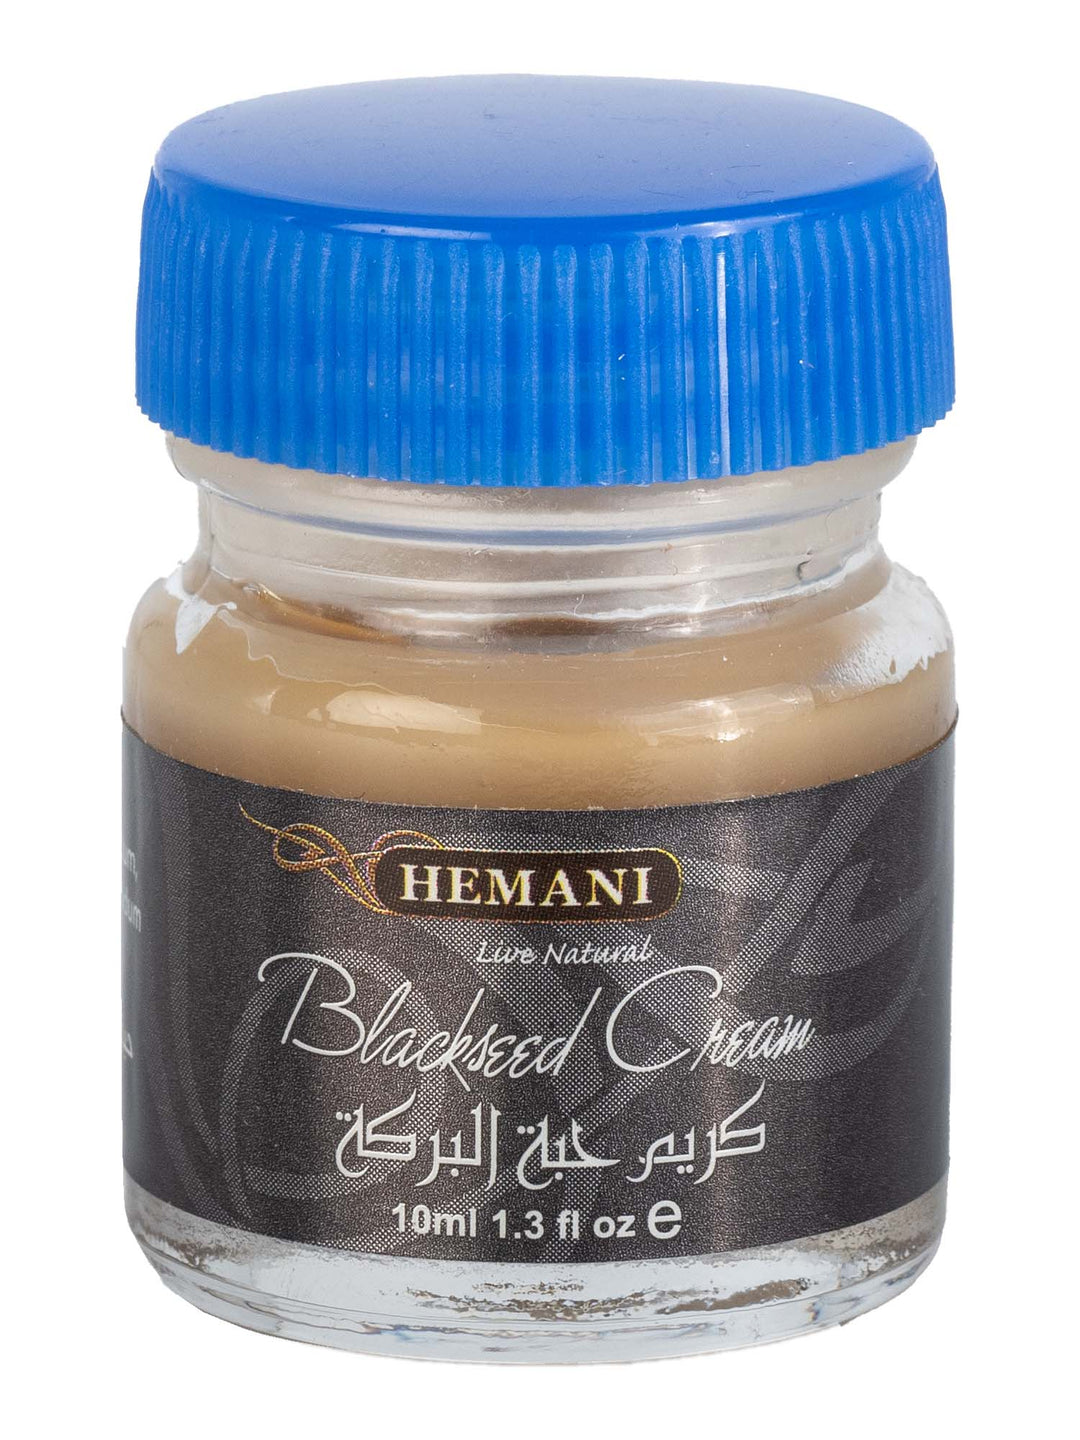 Blackseed Cream - Hemani - 10ml